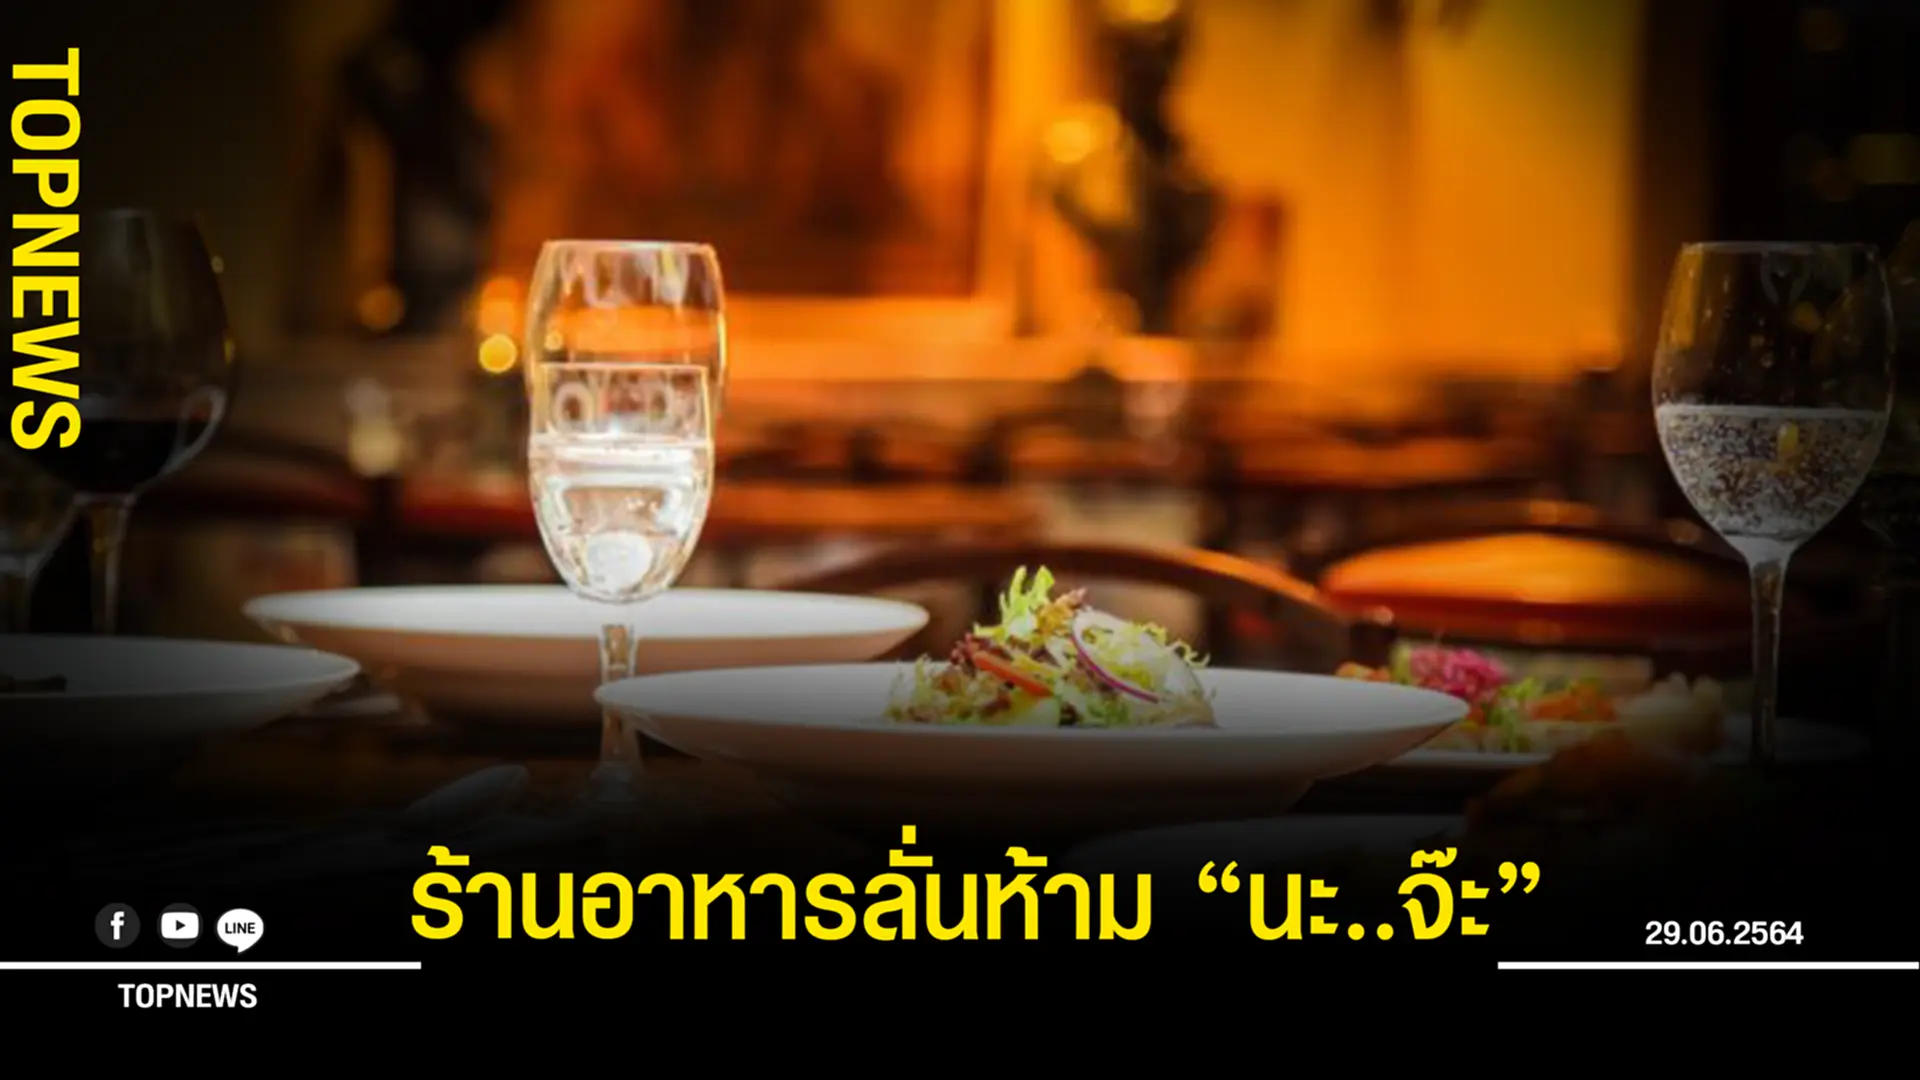 ร้านอาหารไทยย่านอารีย์ ประกาศห้ามพนักงานพูด “นะจ๊ะ”